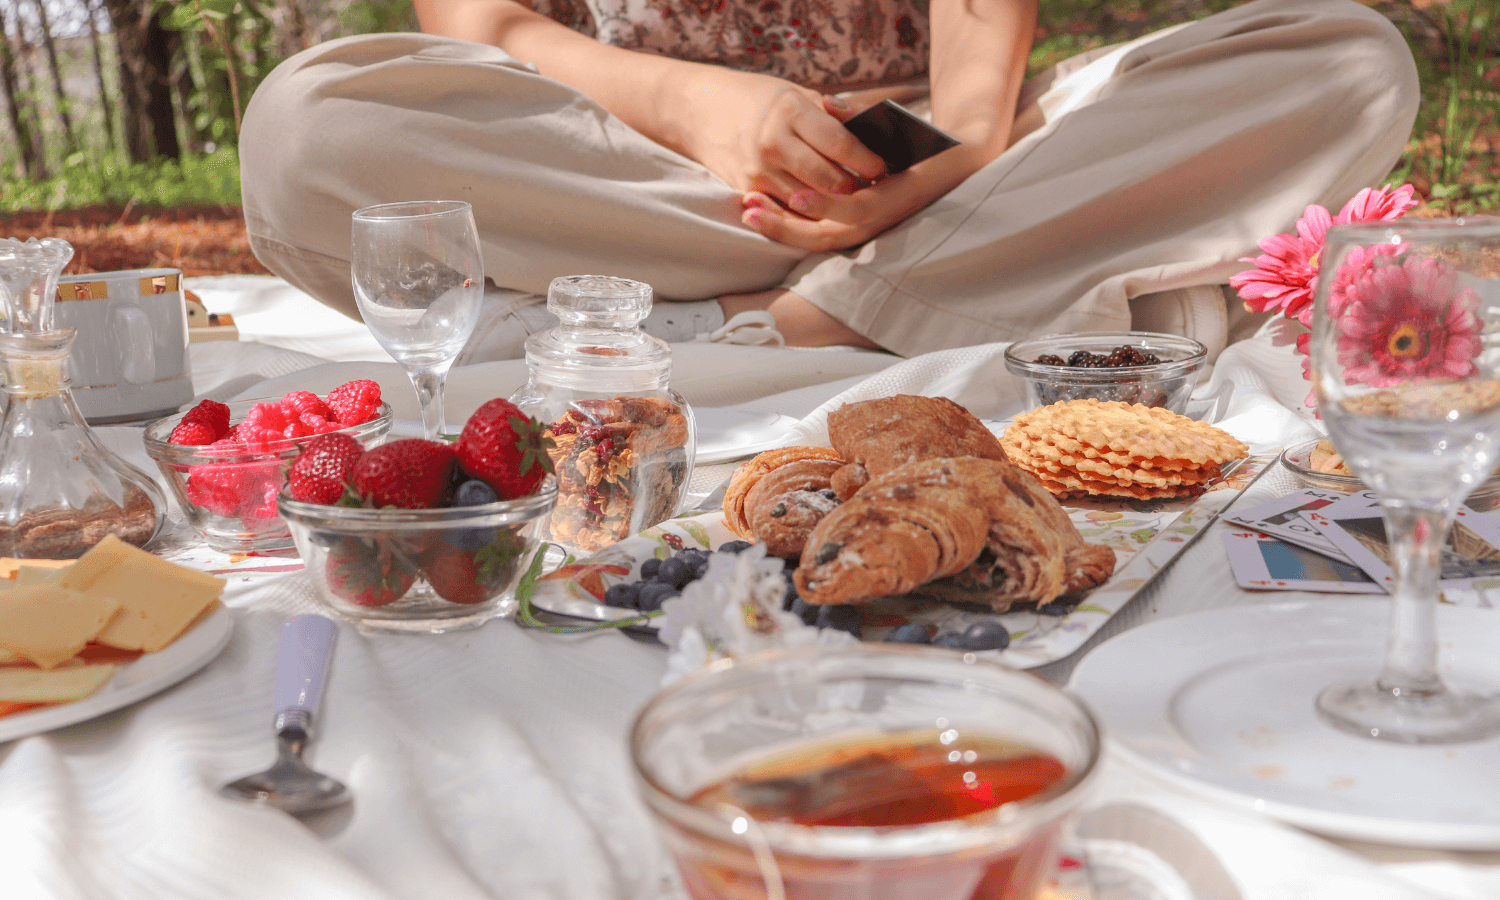 Wer etwas Süßes zum Picknick reichen möchte, könnte zum Beispiel Erdbeeren, Croissants oder Waffeln anbieten. © Unsplash.com